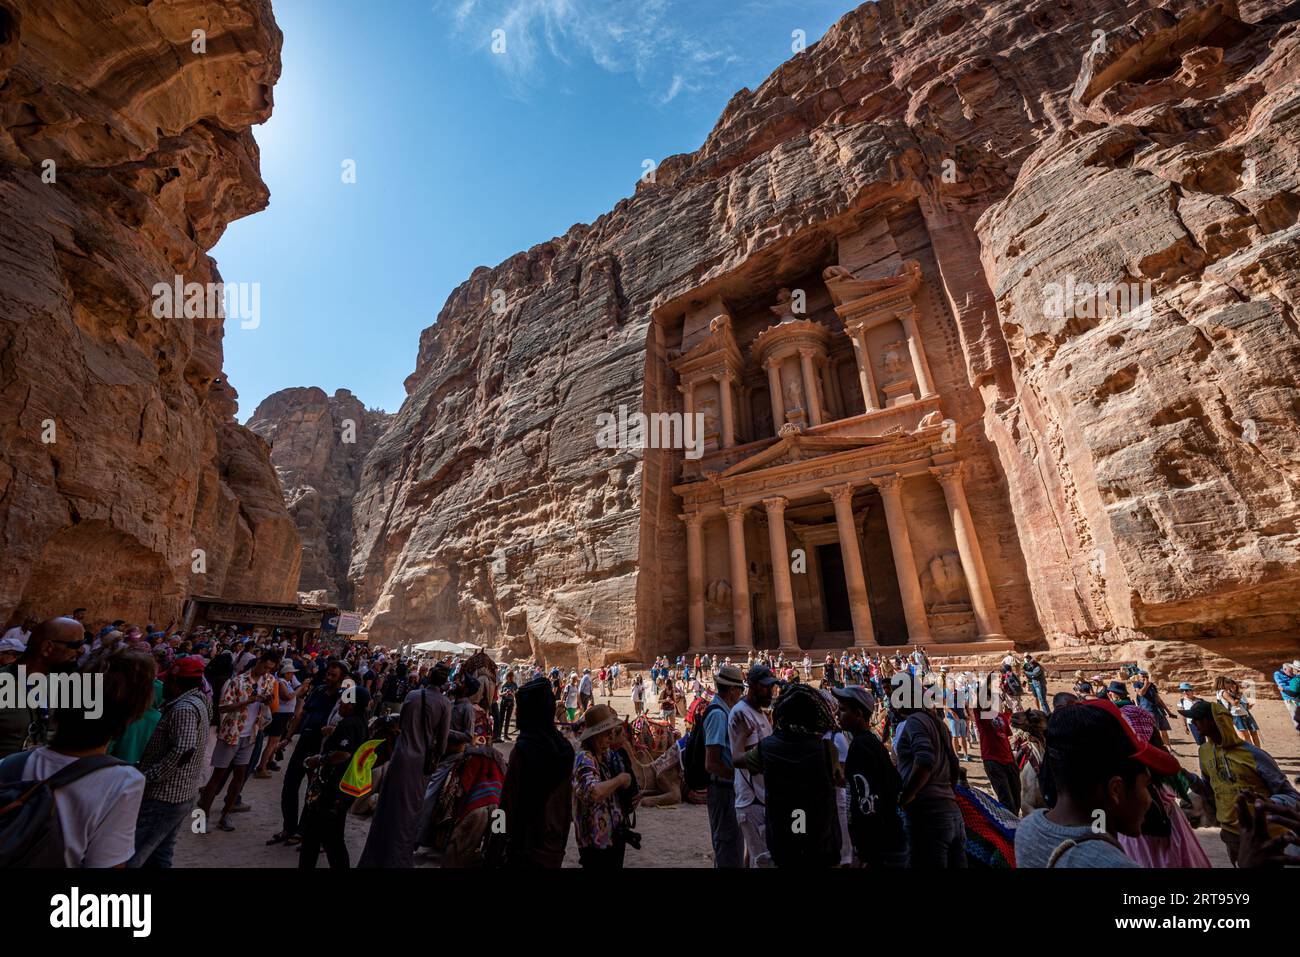 Touristes devant le Trésor (Al-Khazneh), site archéologique de Petra, Jordanie Banque D'Images